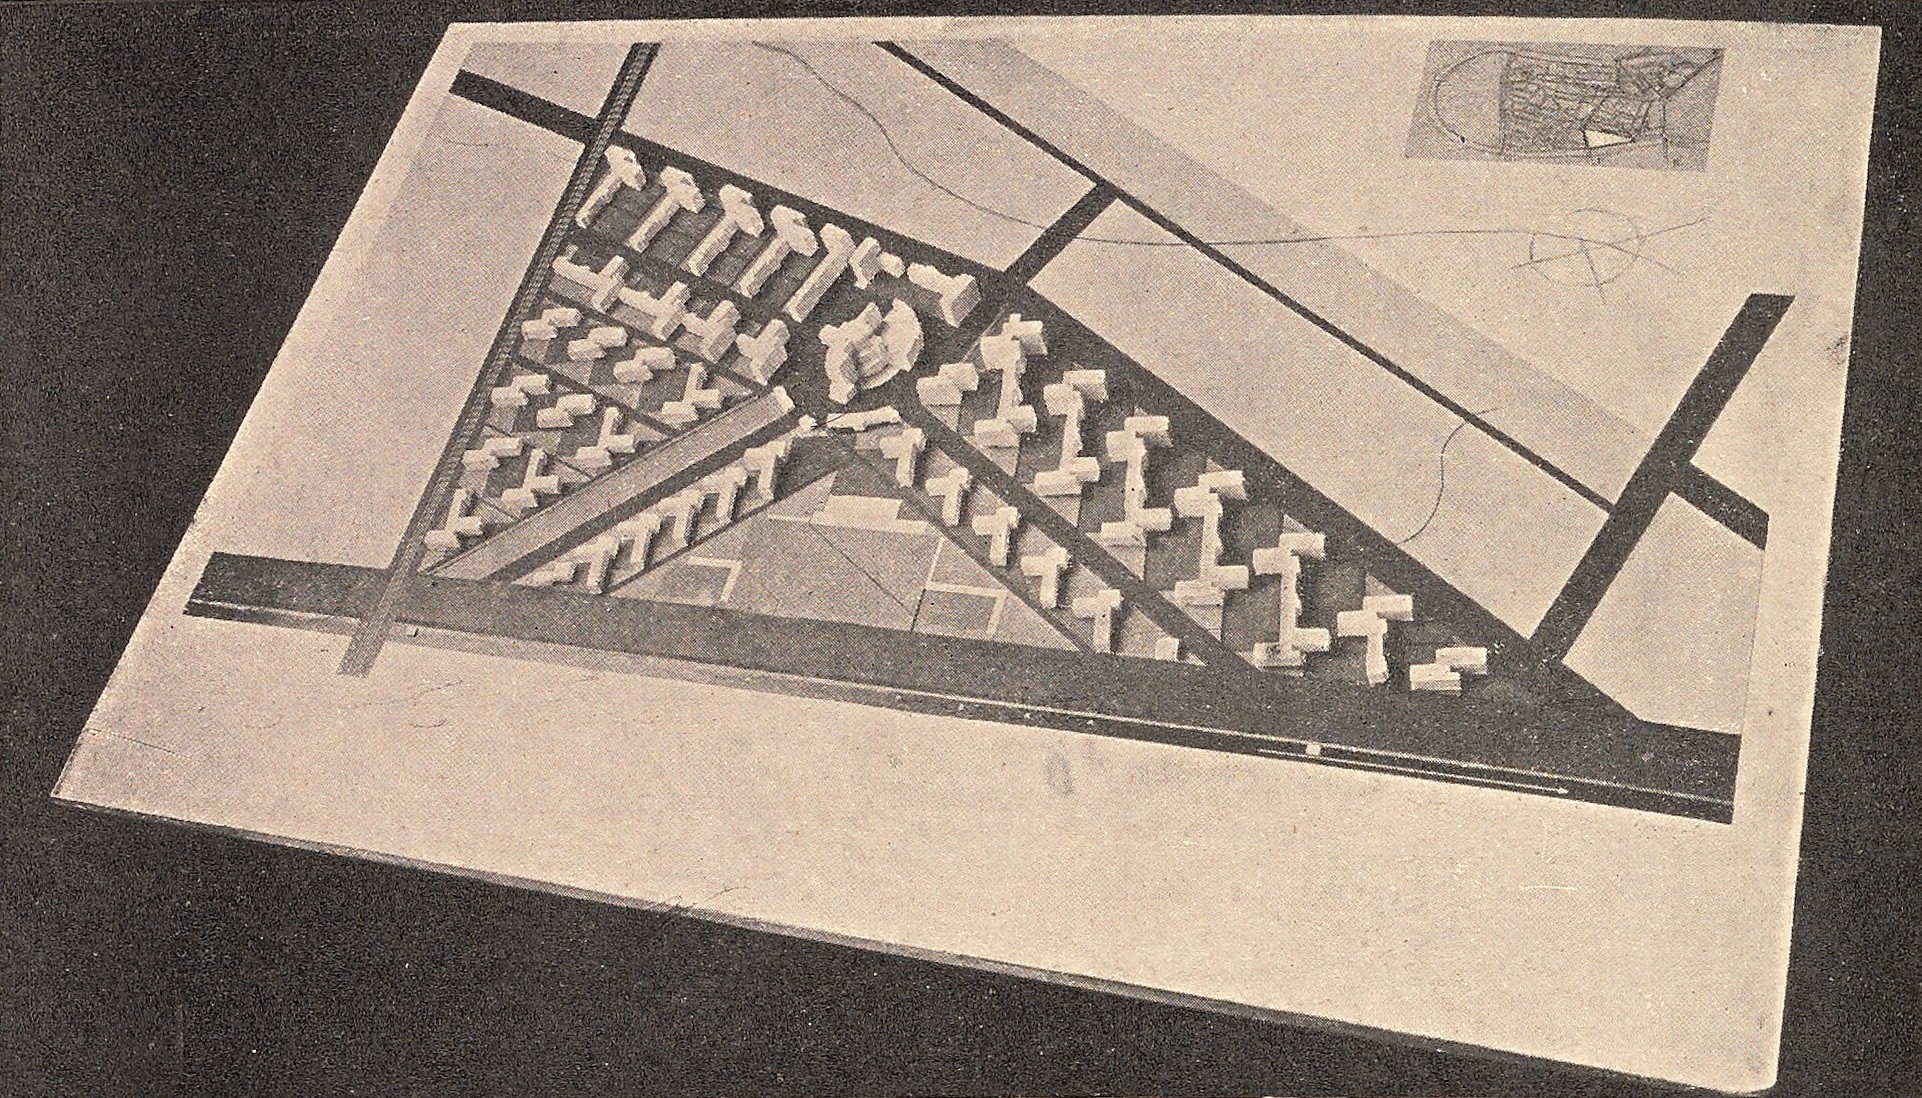 Планировка жилого коммунального городского квартала. Работа студента И. В. Ламцева, 1926 г.